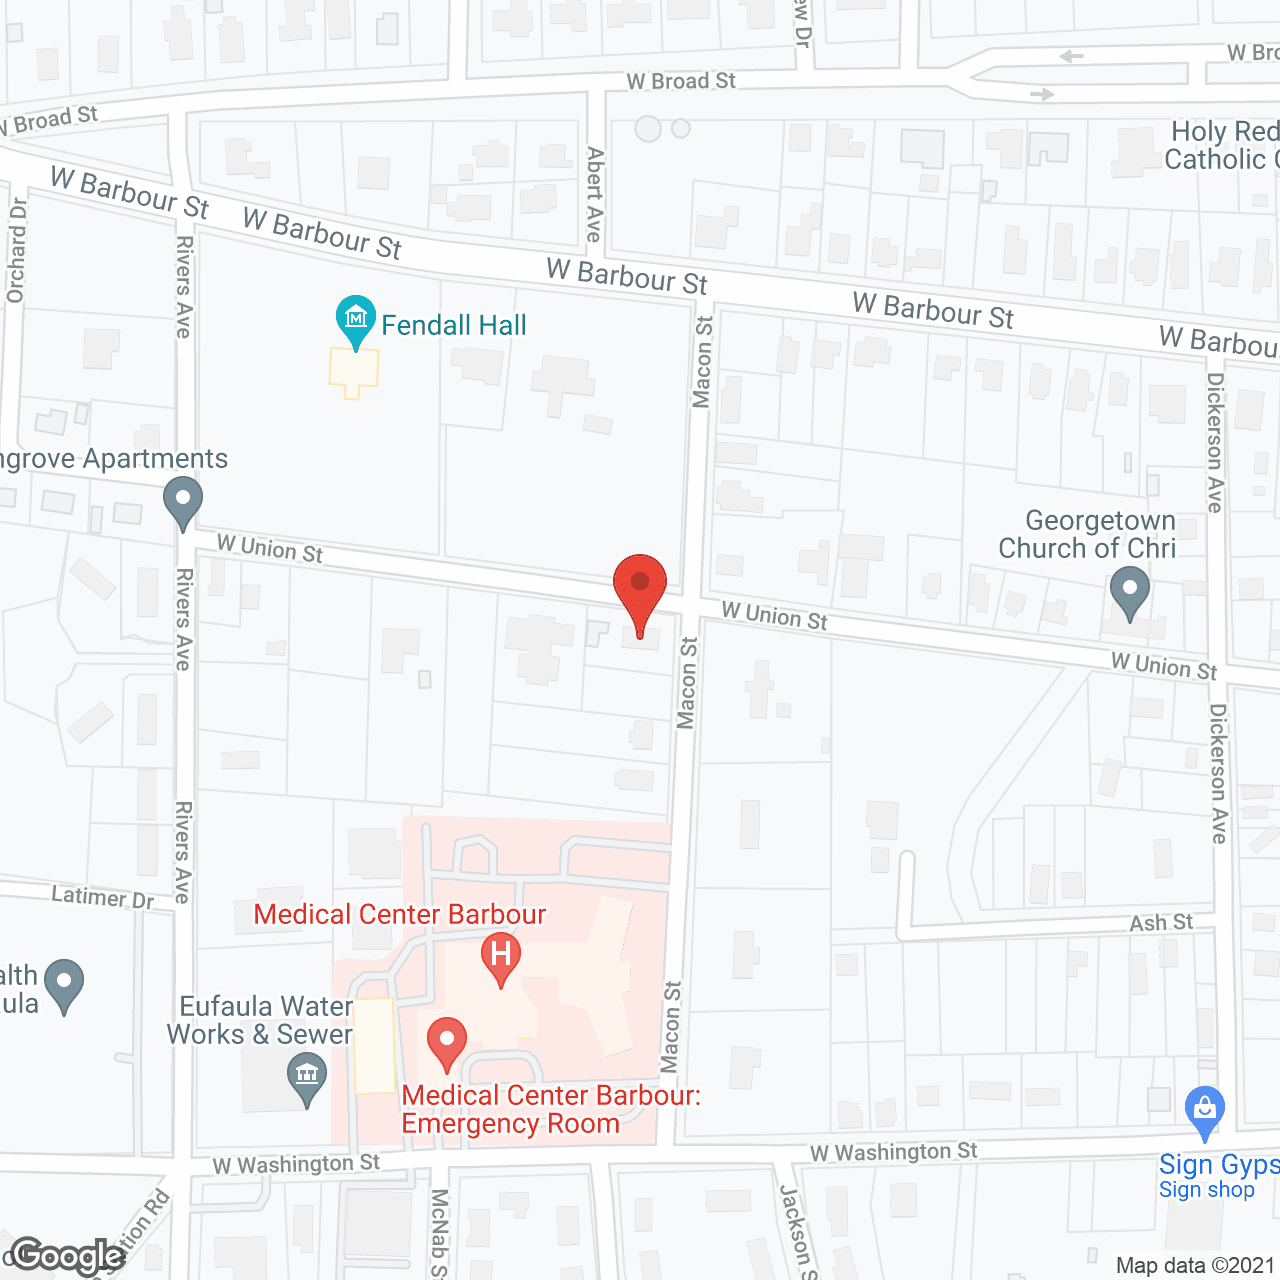 River Oaks in google map